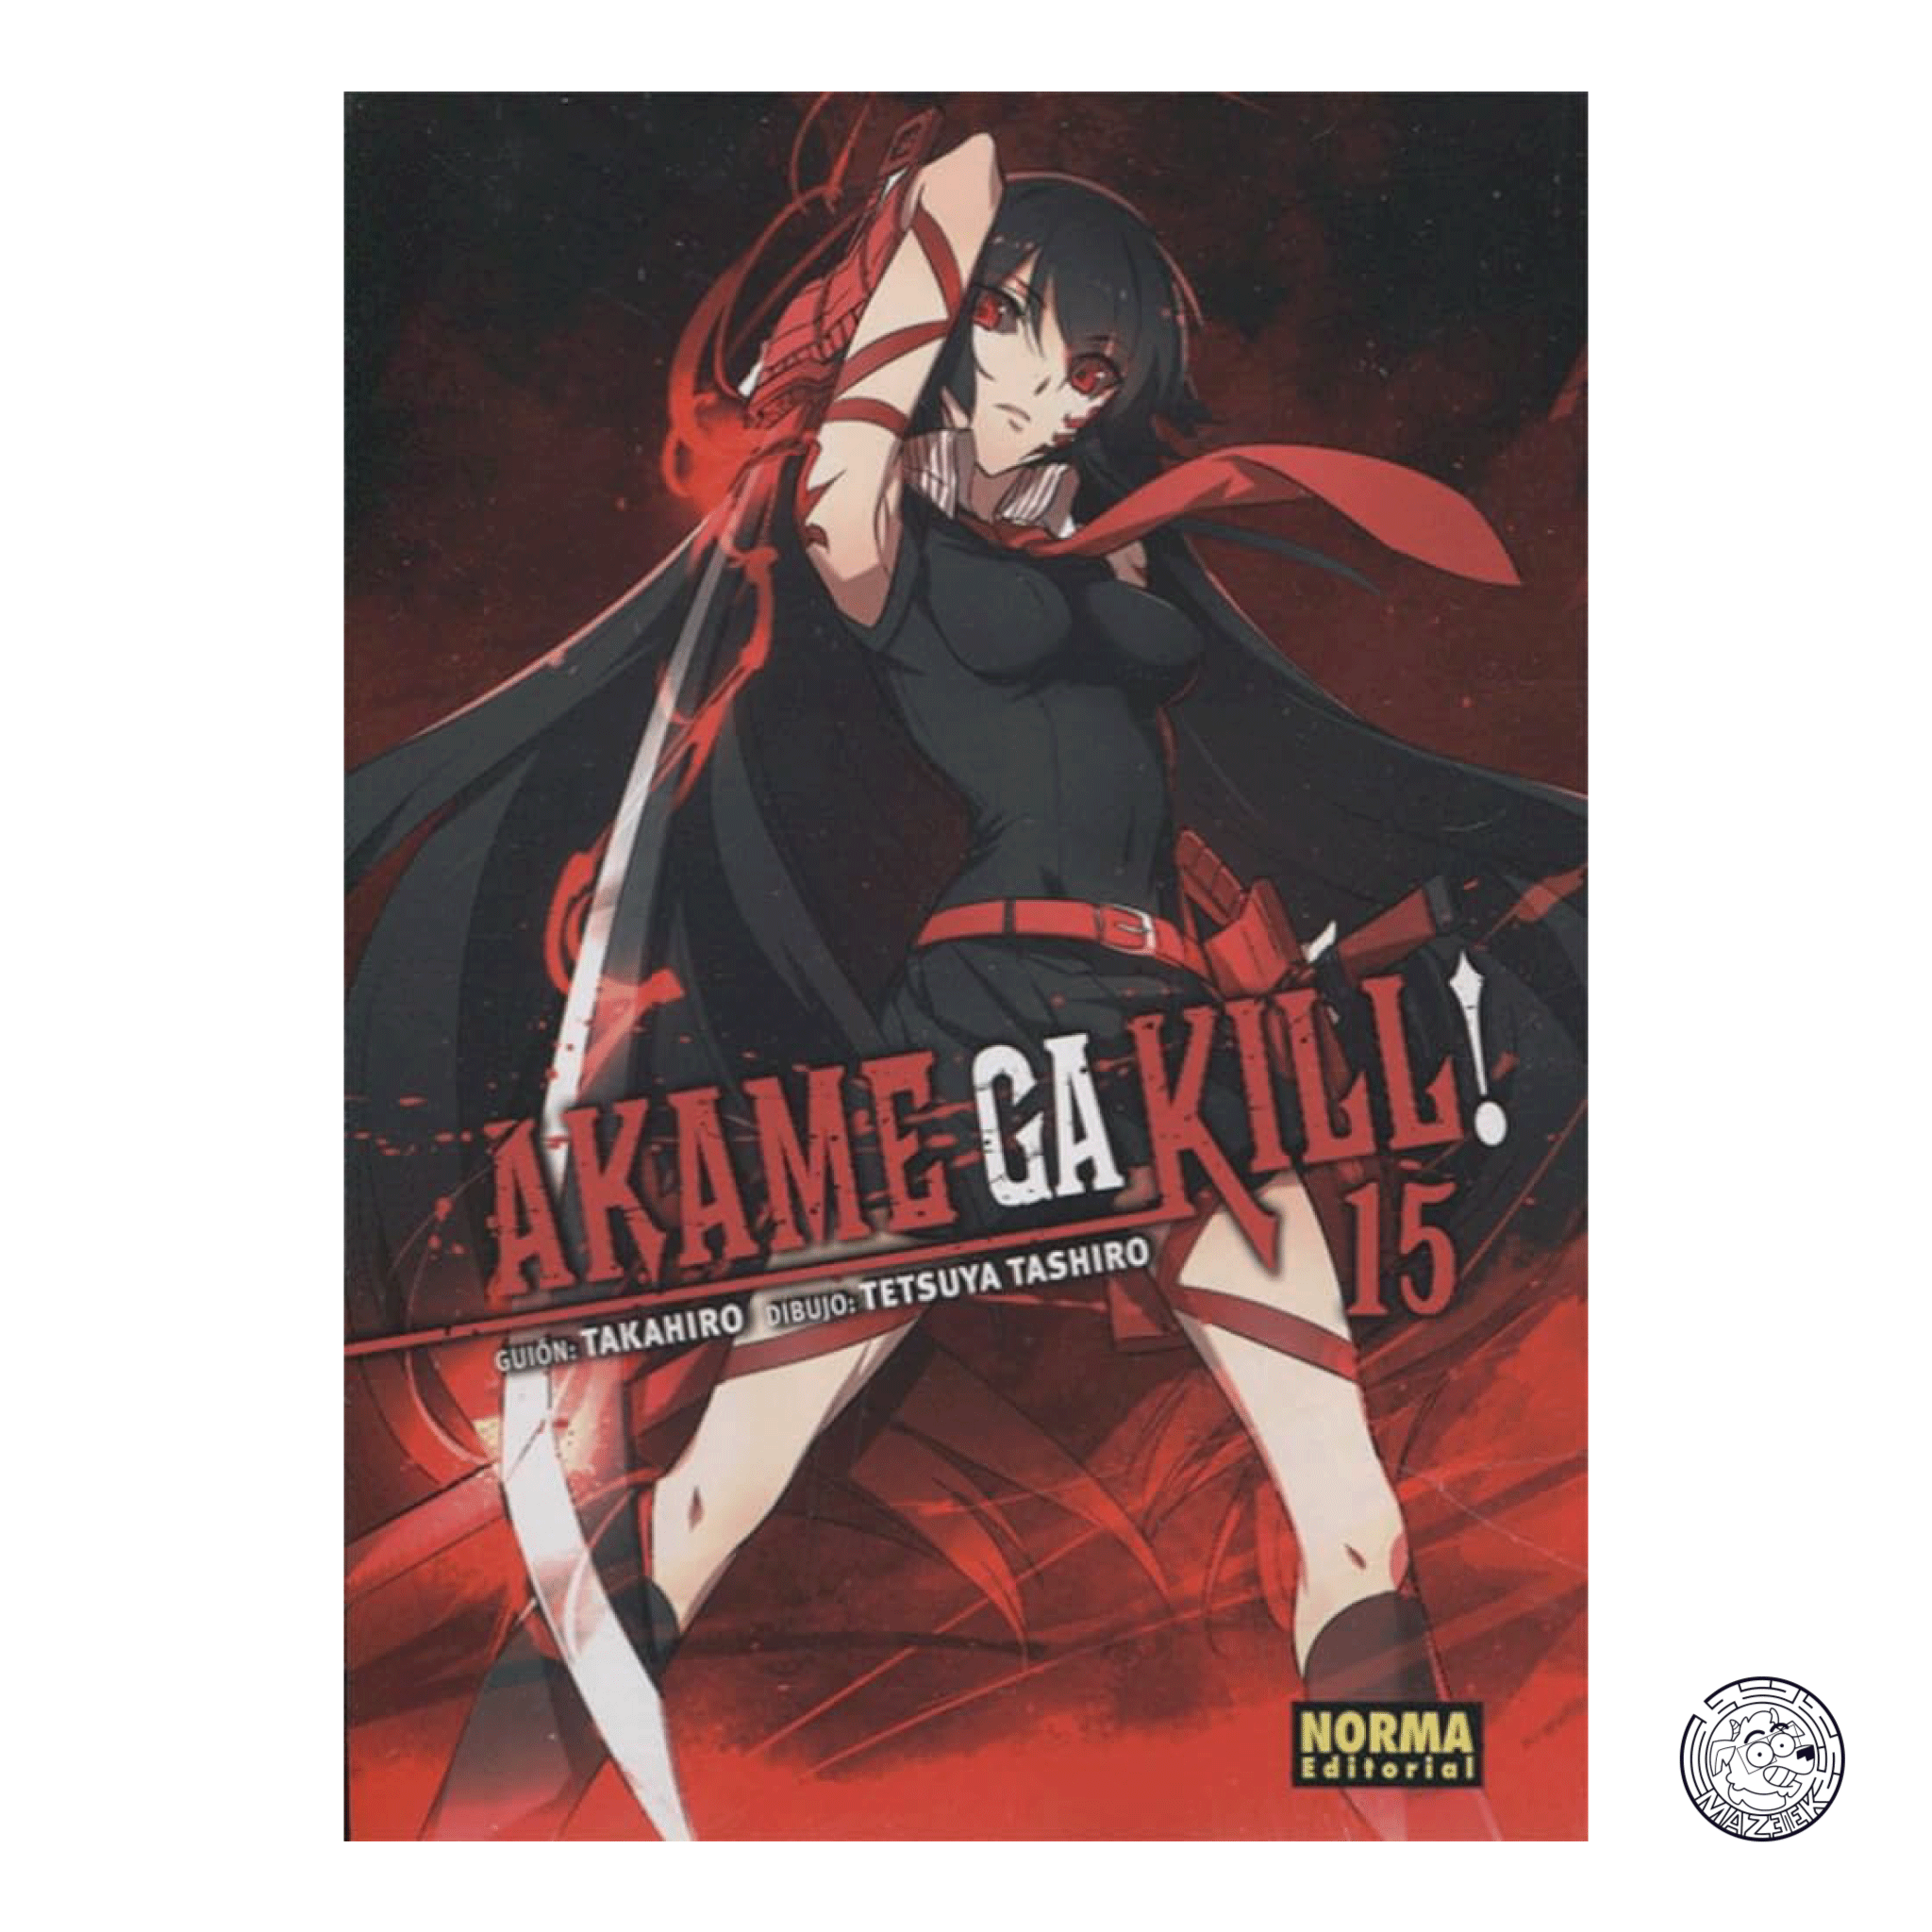 Akame Ga Kill! 15 - First Printing